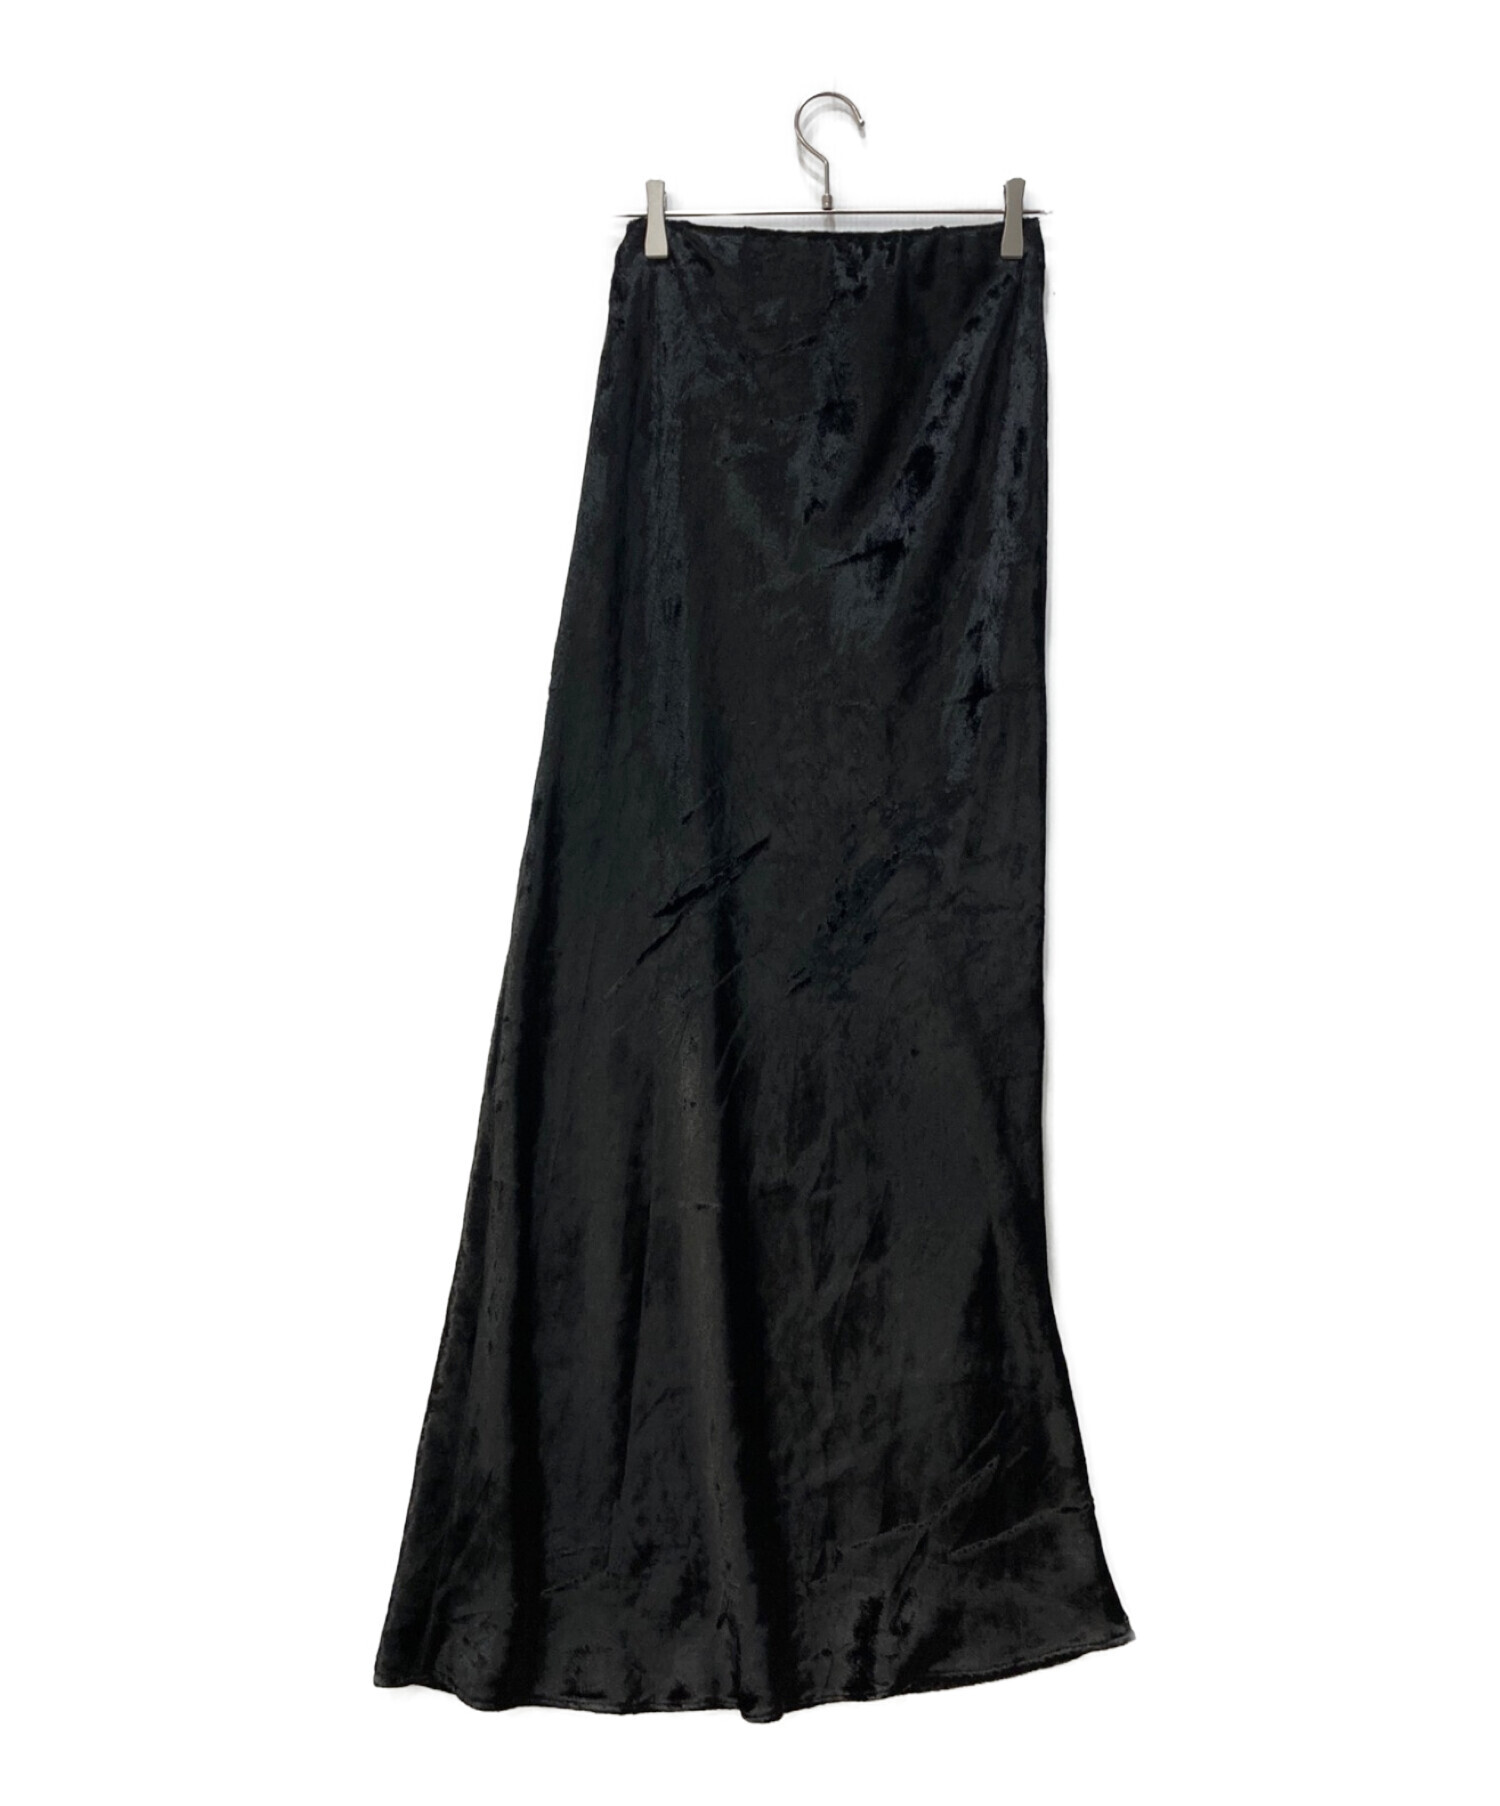 6,150円enof velvet long skirt ブラックL